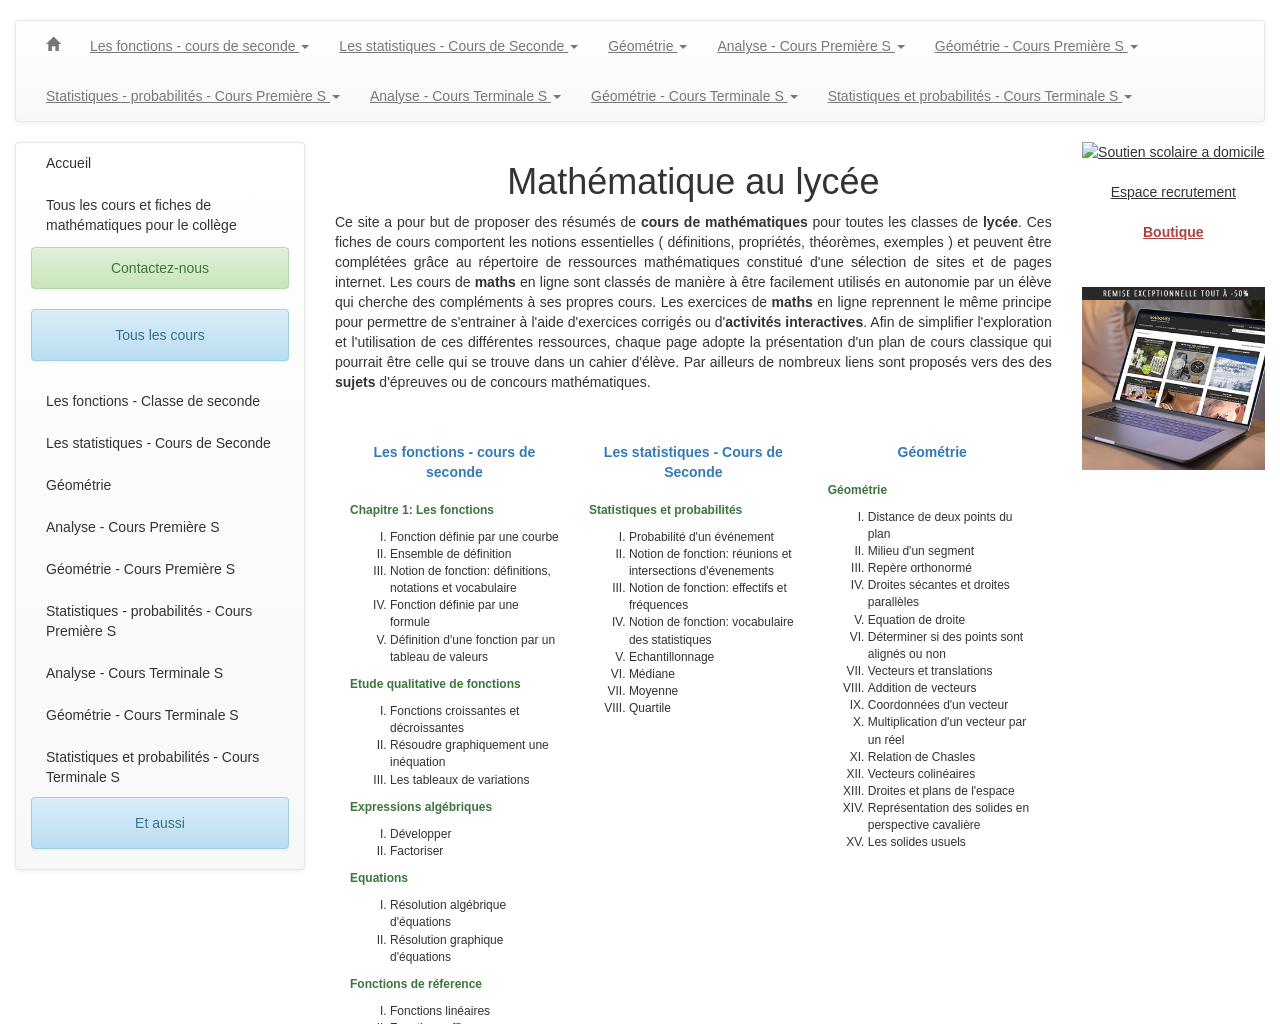 www.mathematiques-lycee.com